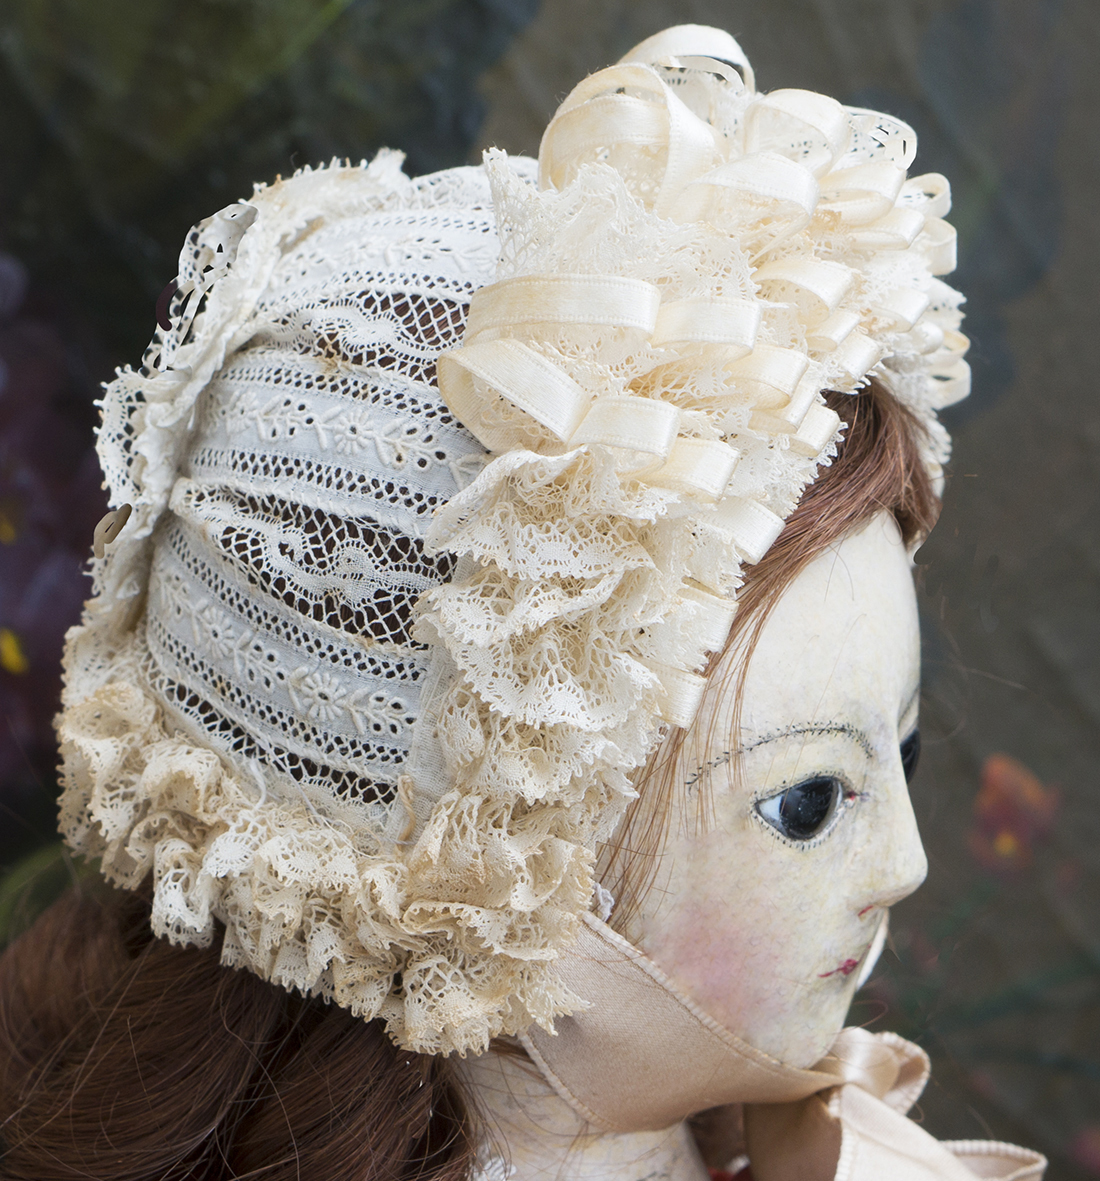 Antique doll Bonnet